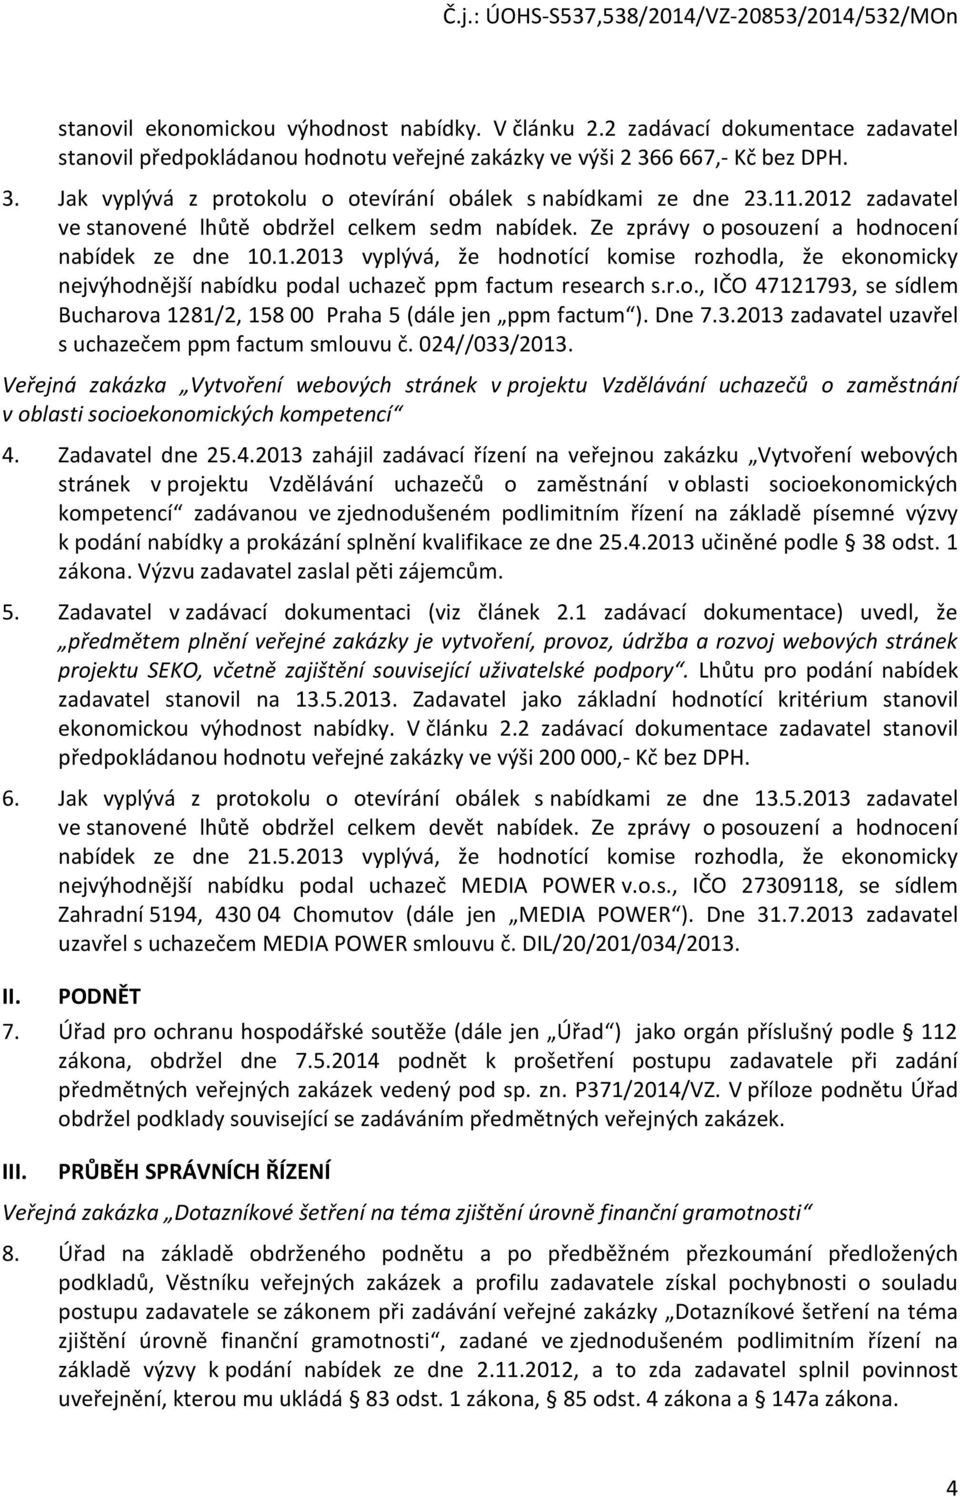 Ze zprávy o posouzení a hodnocení nabídek ze dne 10.1.2013 vyplývá, že hodnotící komise rozhodla, že ekonomicky nejvýhodnější nabídku podal uchazeč ppm factum research s.r.o., IČO 47121793, se sídlem Bucharova 1281/2, 158 00 Praha 5 (dále jen ppm factum ).